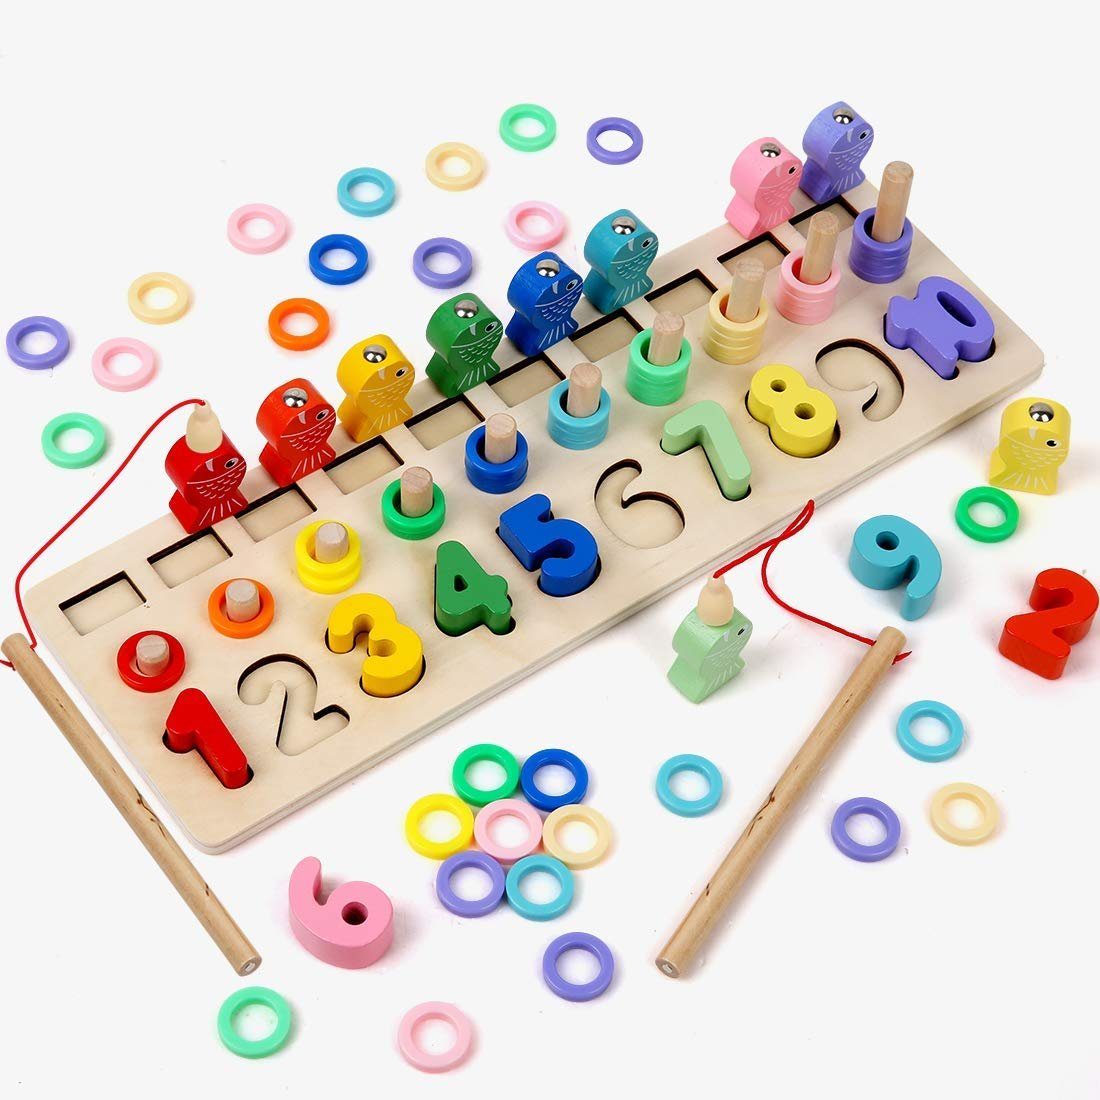 Holz Mathematik Angeln Spiel Spielzeug Kit Kinder zählen Form Spiel Sortieren Le 